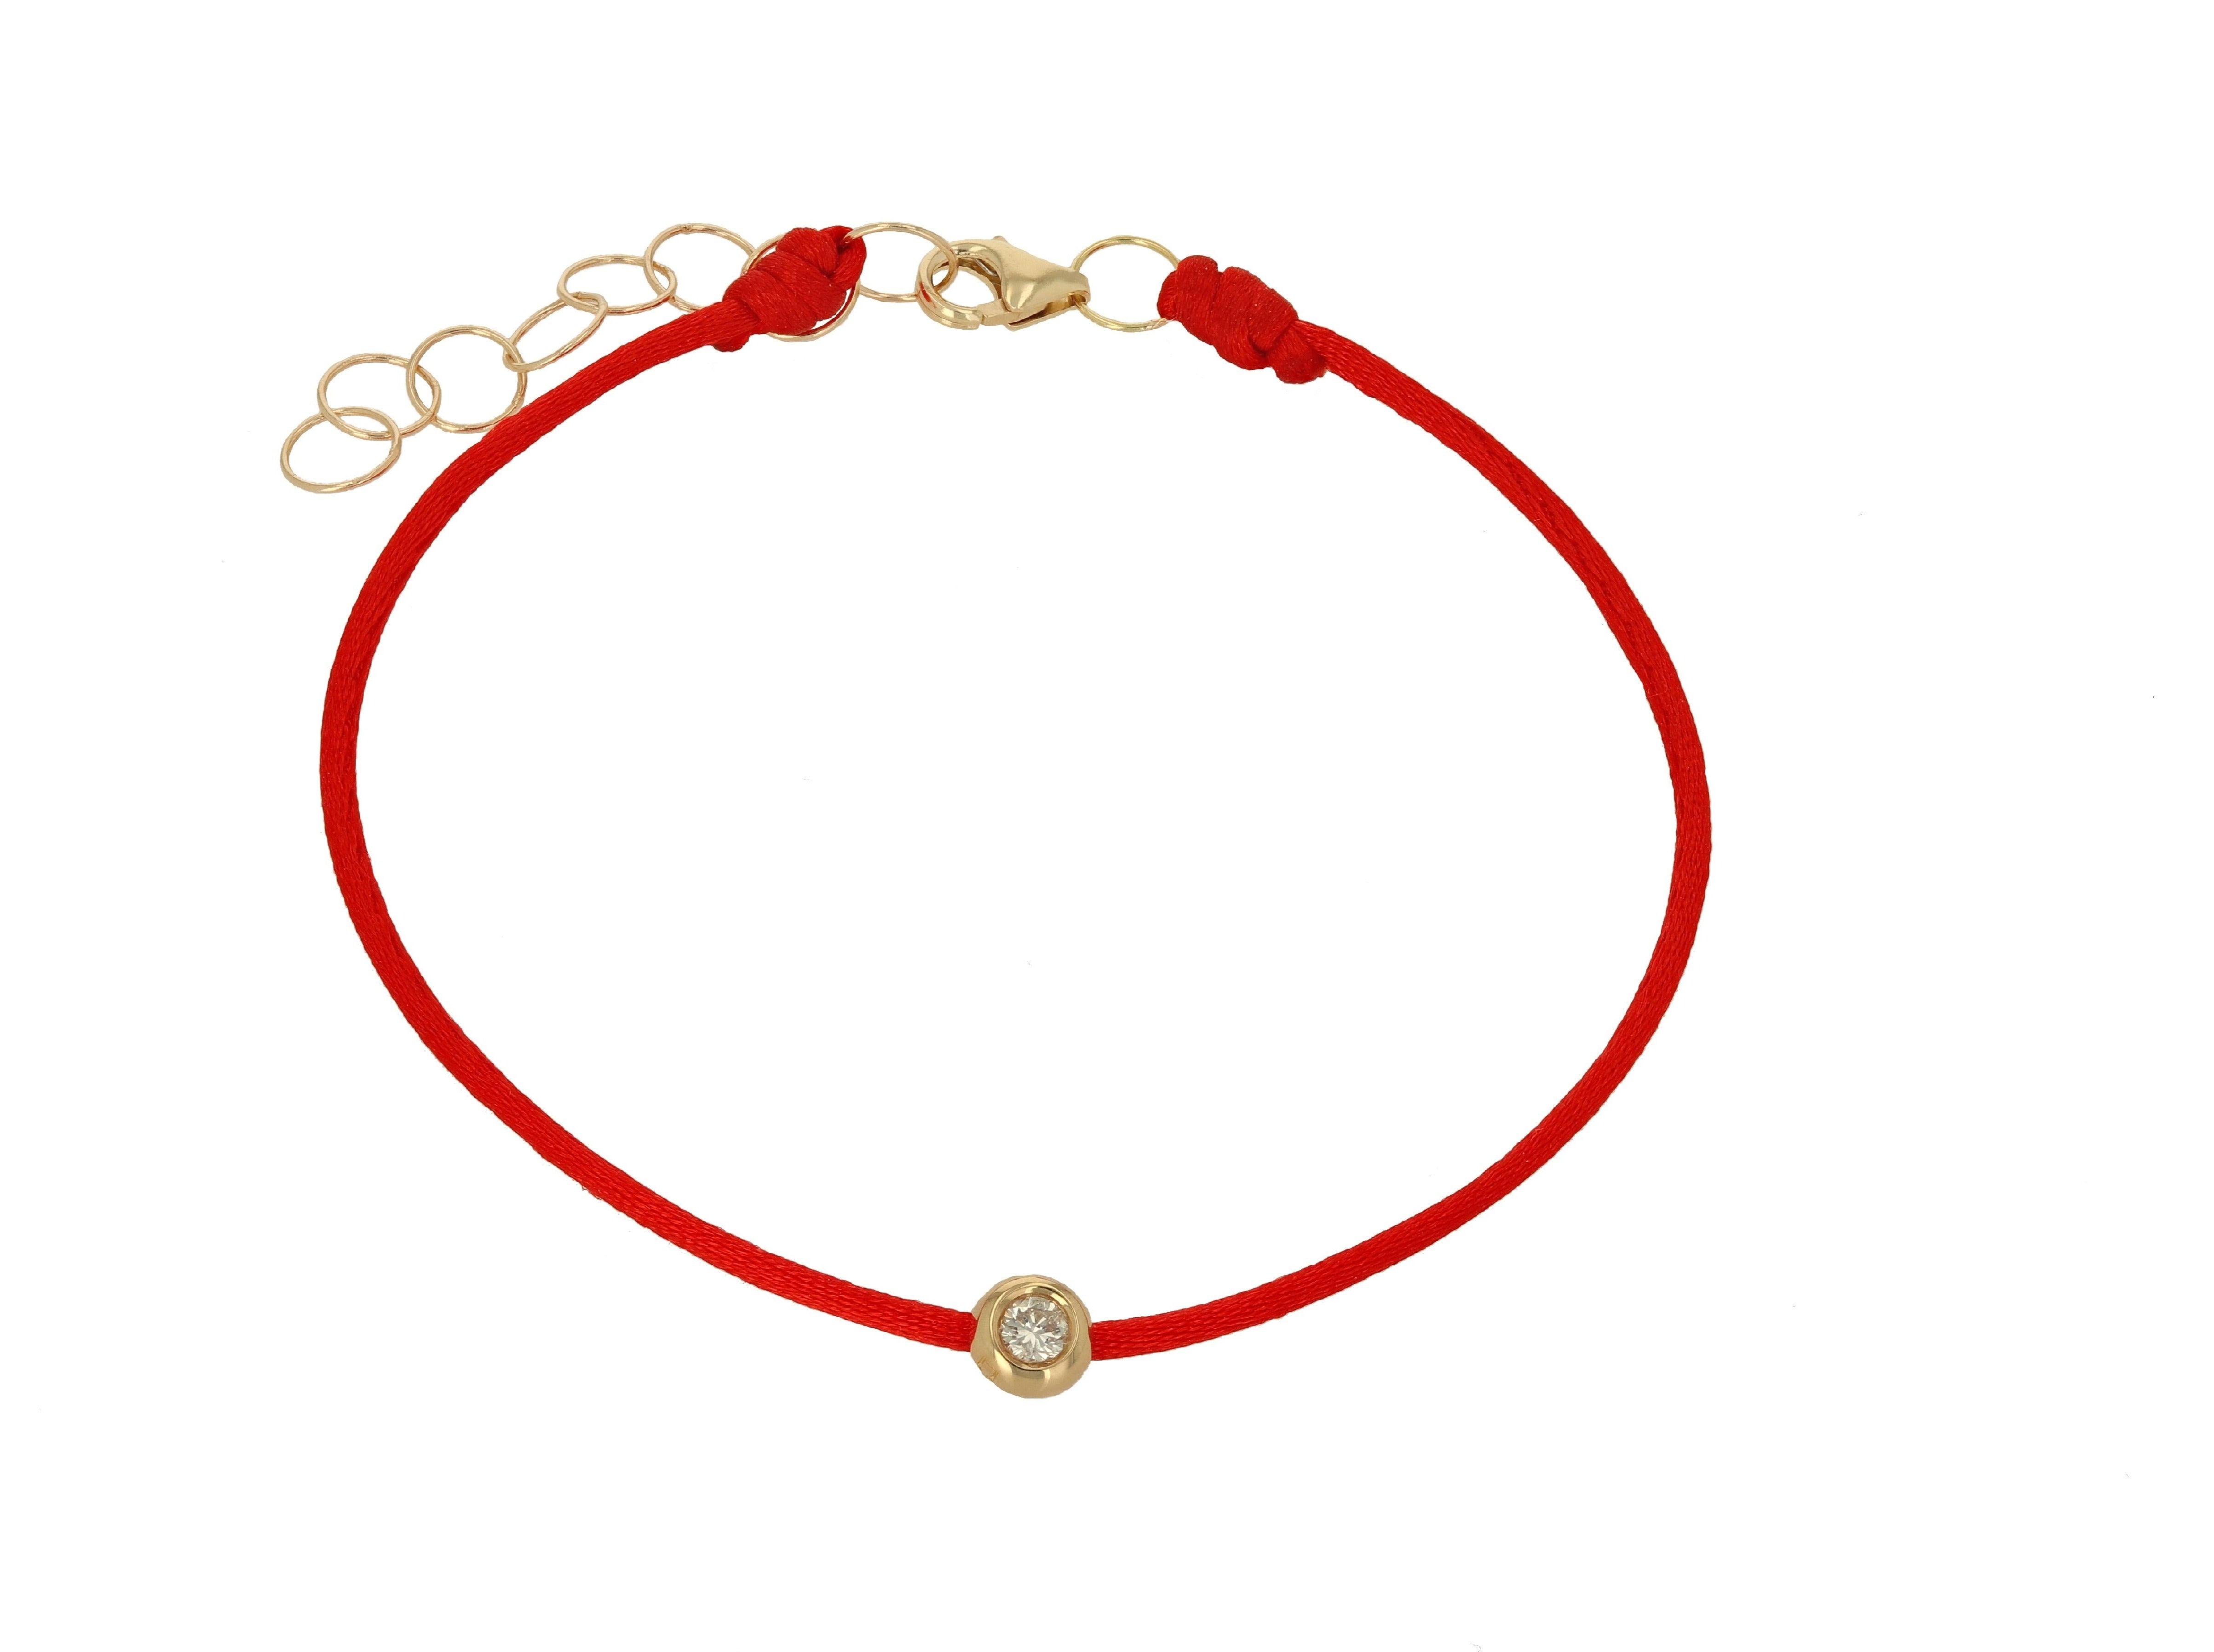 Diamond and Red String Bracelet – Rachel Reid